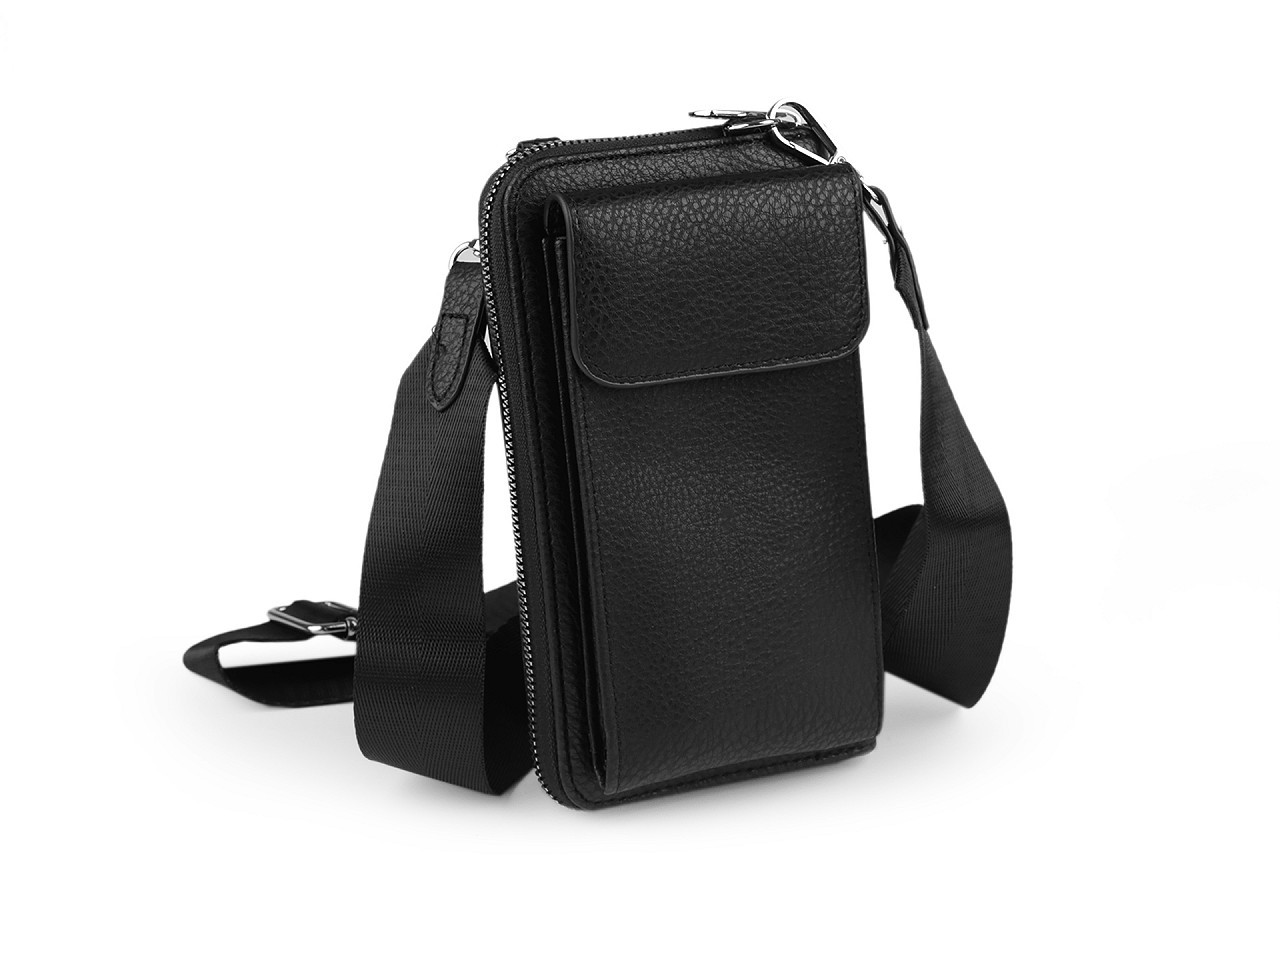 Peněženka s kapsou na mobil přes rameno crossbody s klíčenkou 11x19 cm, barva 6 černá